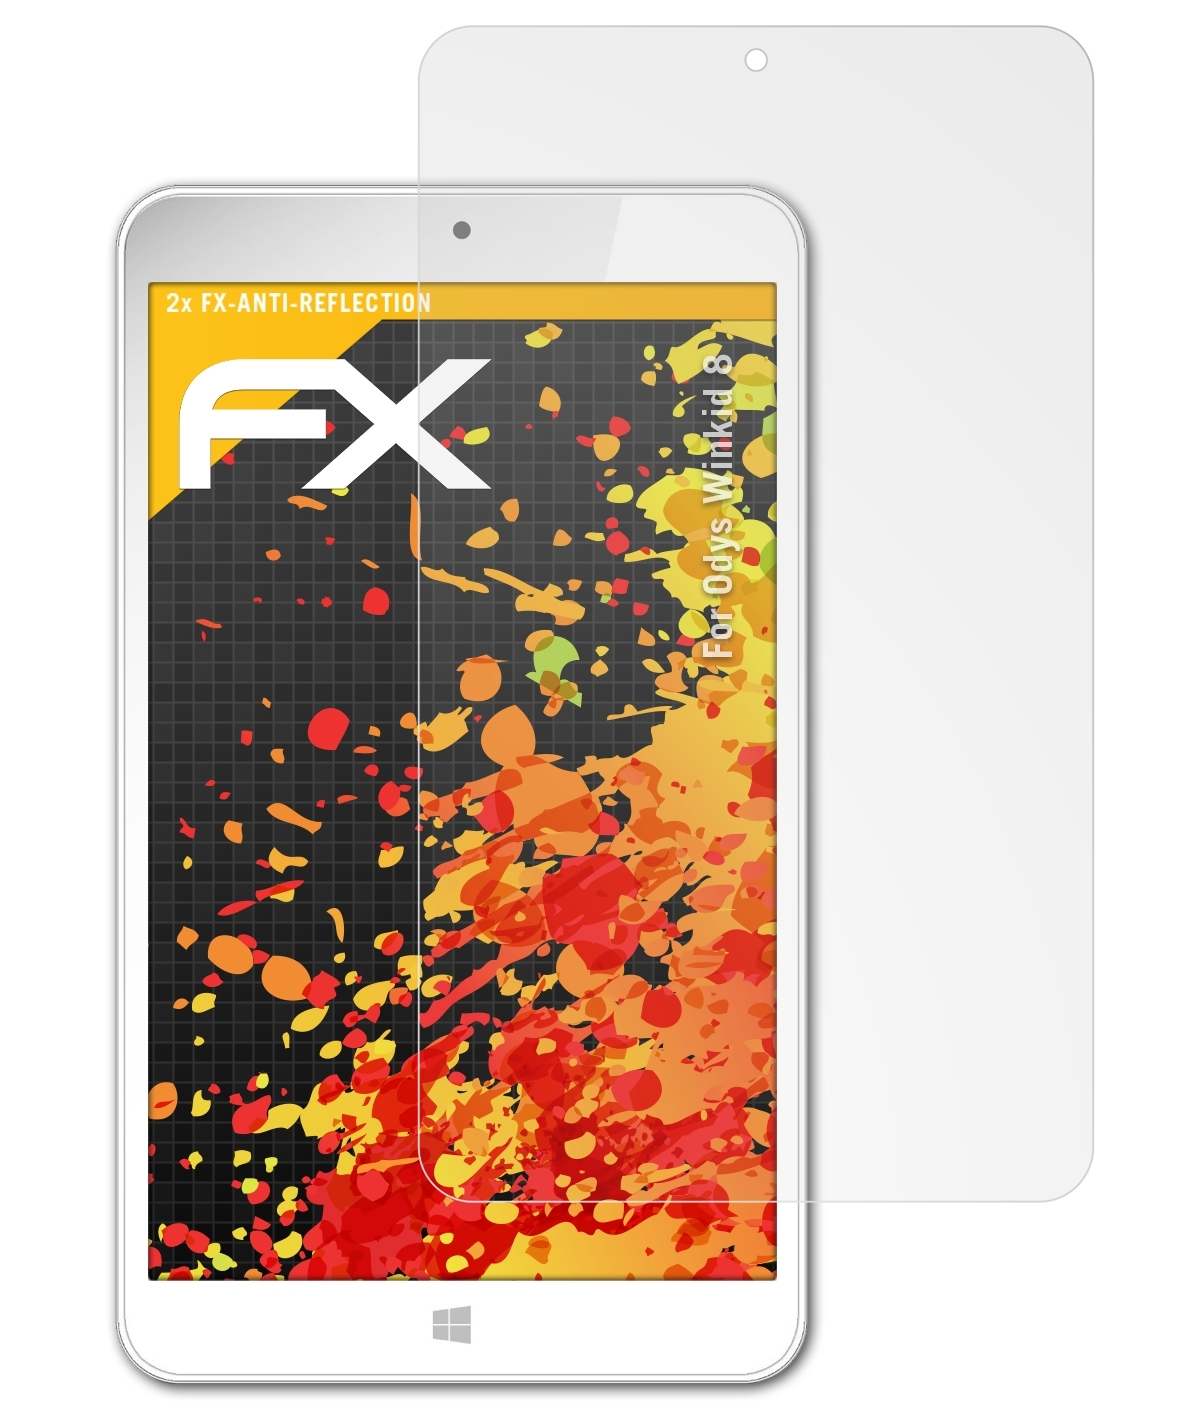 Odys Winkid FX-Antireflex ATFOLIX 2x Displayschutz(für 8)